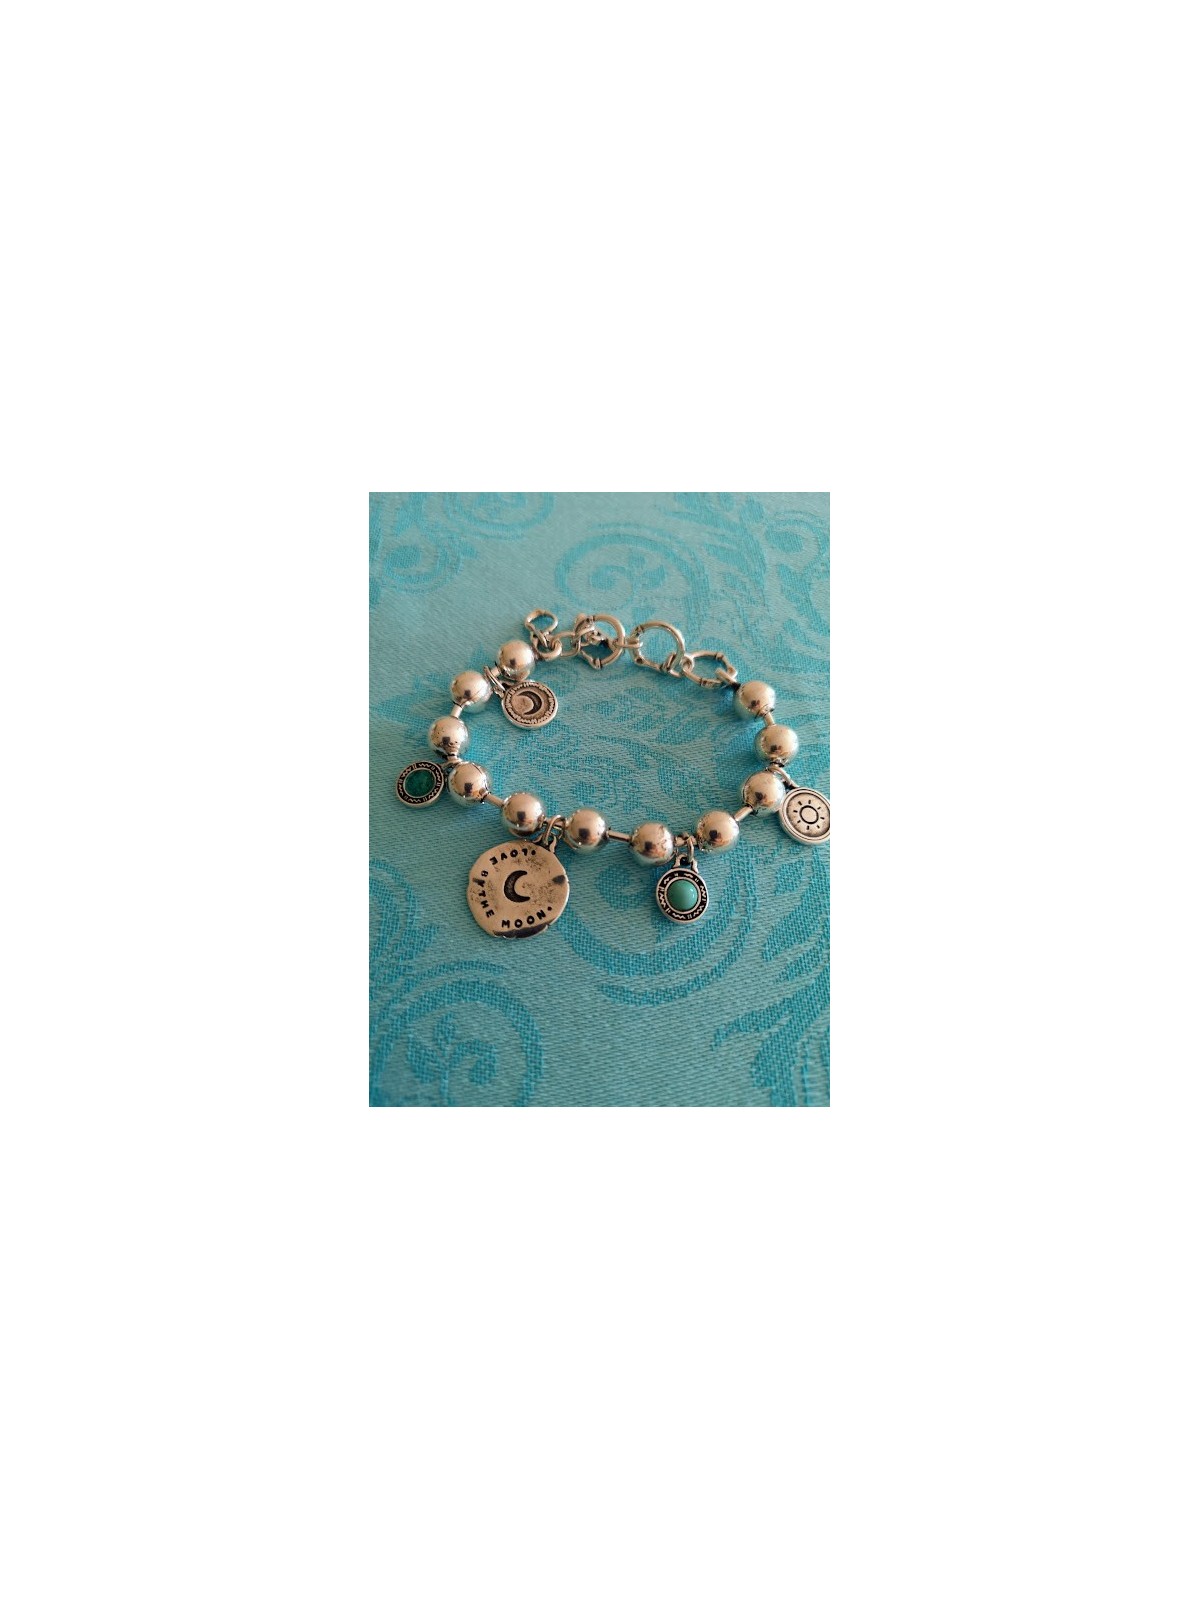 Bracelet Eclipse Ciclon l 1 vue sur fond turquoise l Tilleulmenthe boutique de mode femme